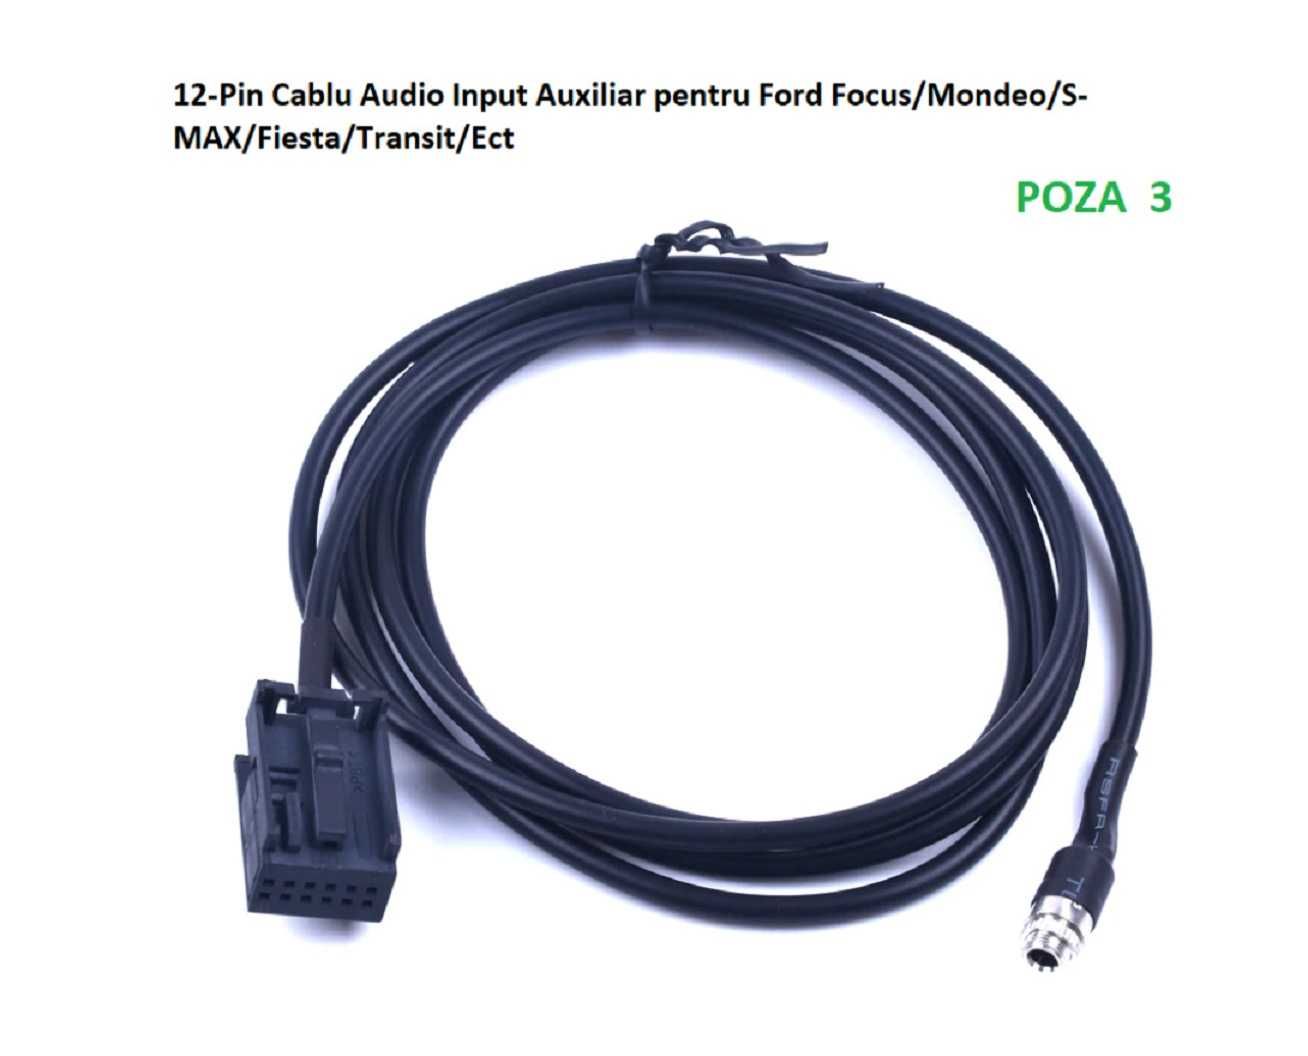 Cablu adaptor auxiliar USB Ford Bluetooth - Jack - Microfon